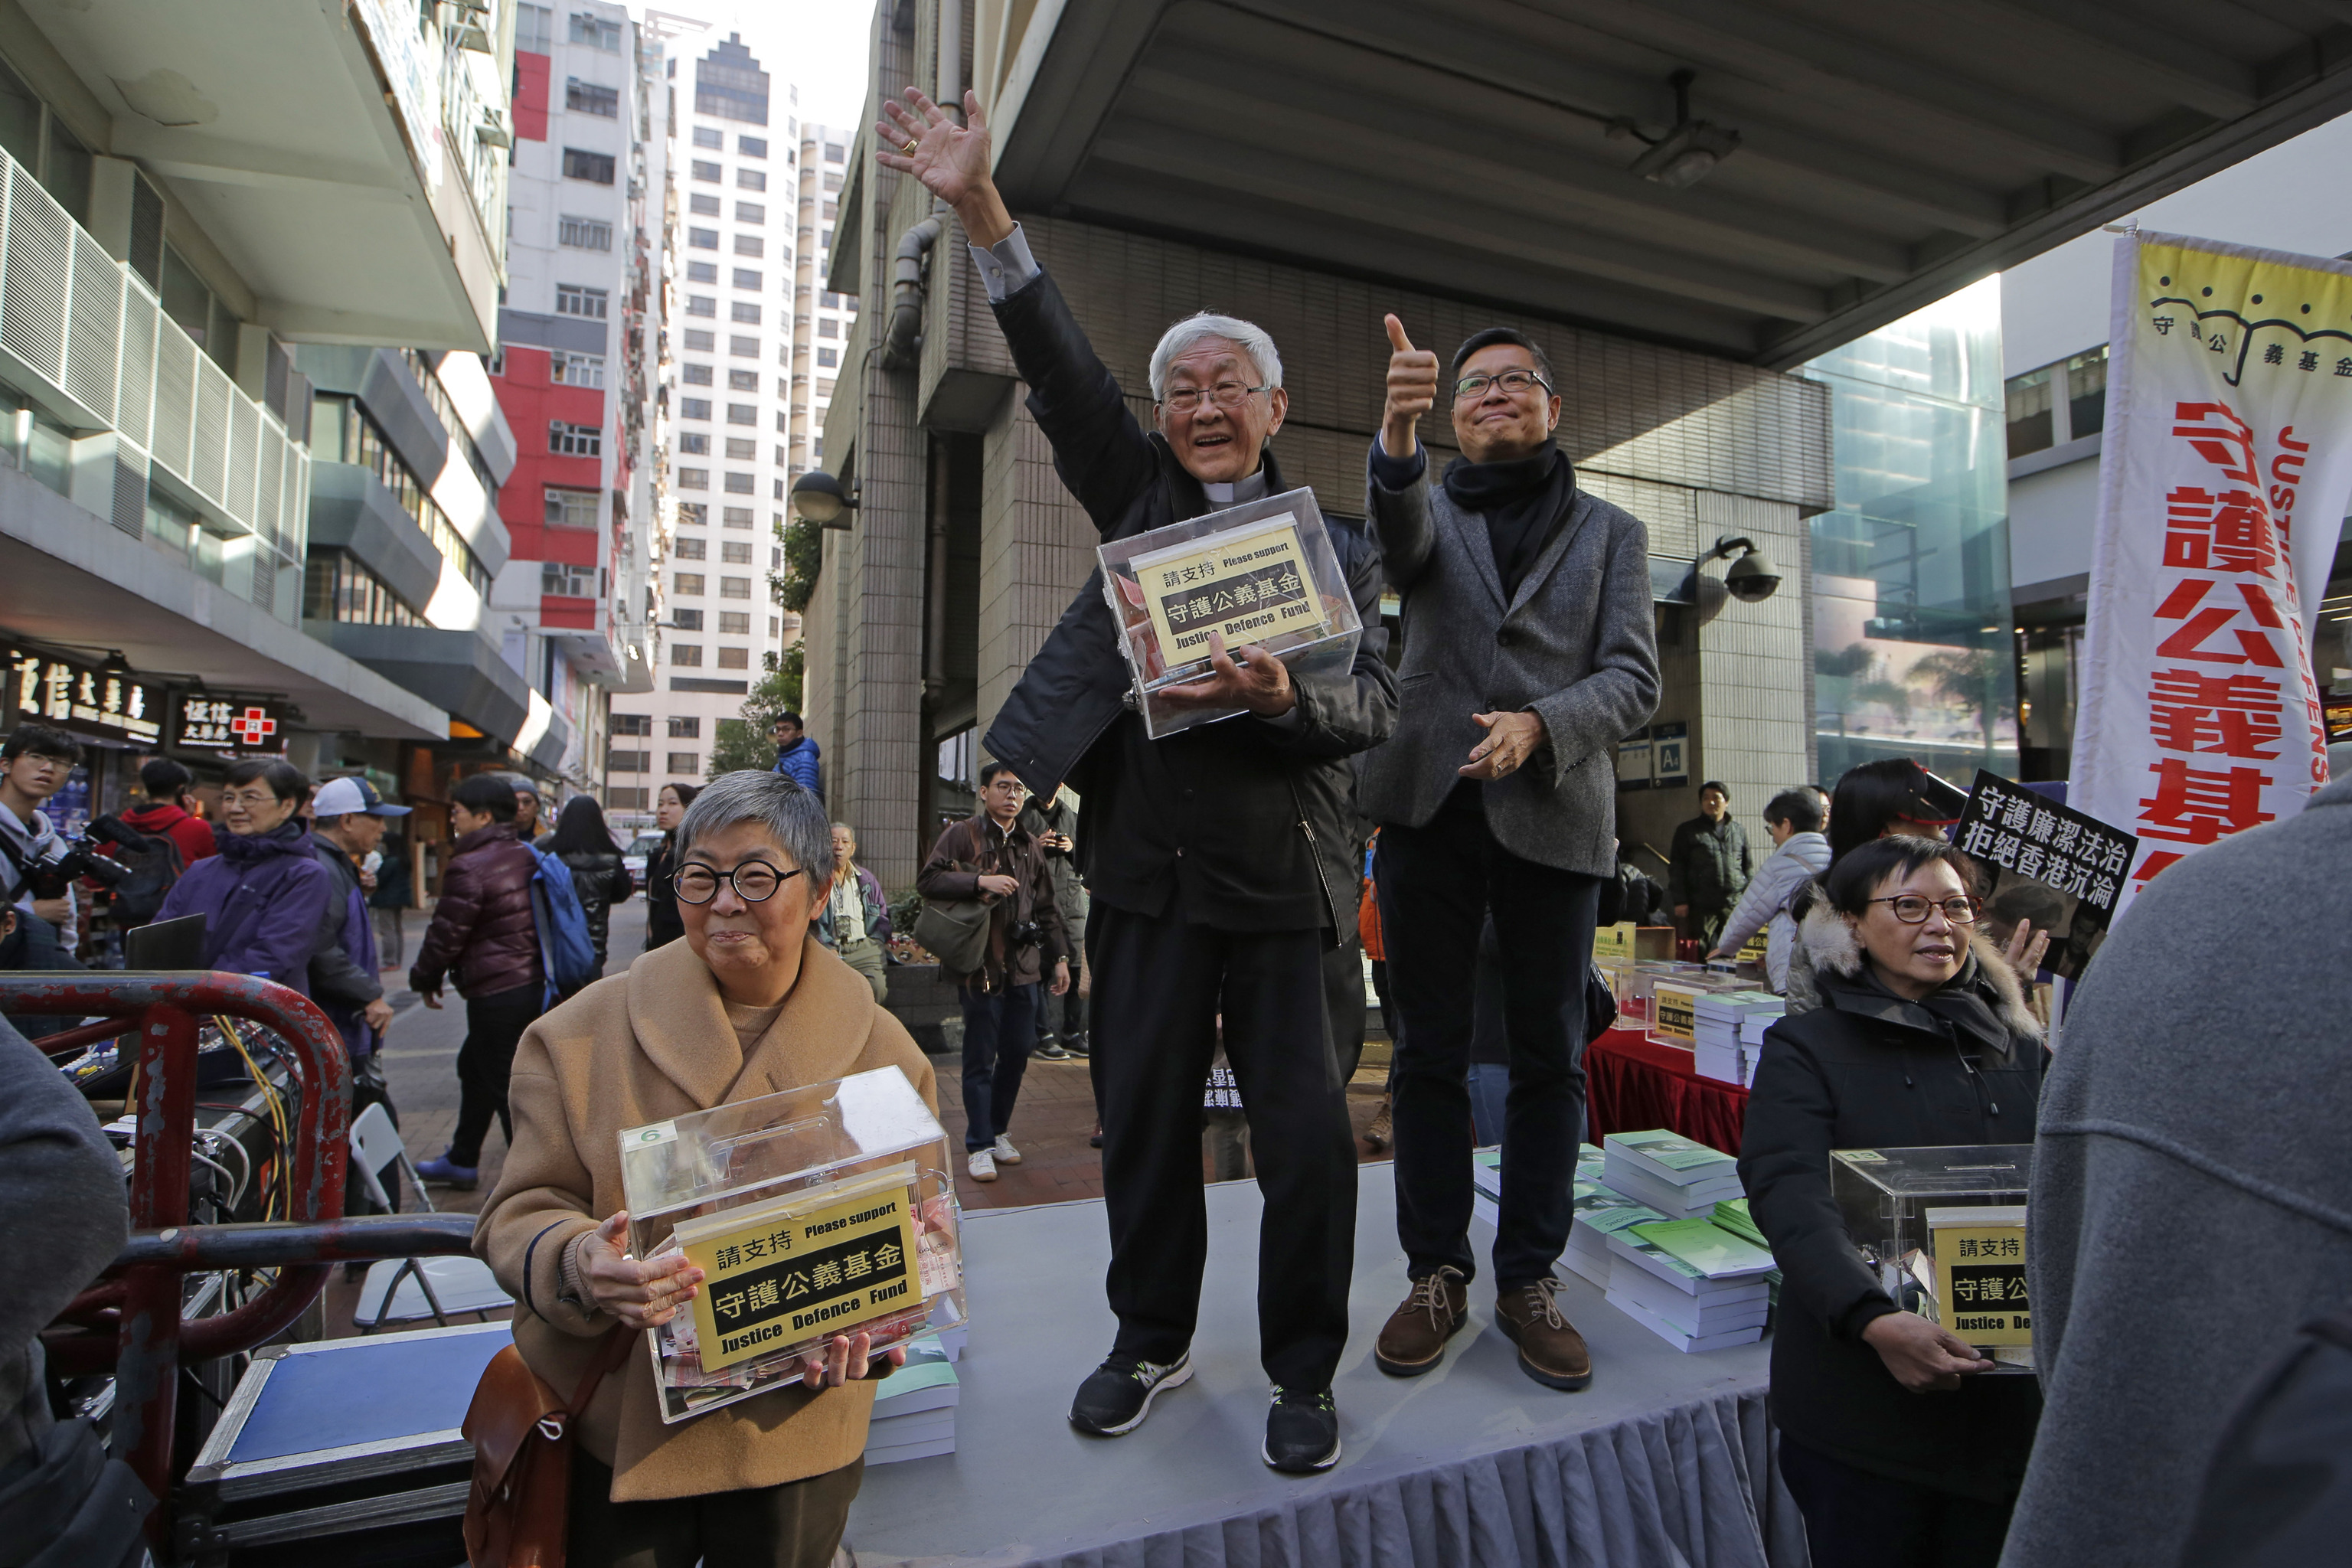 El cardenal Joseph Zen, pide donativos en una protesta en Hong Kong.